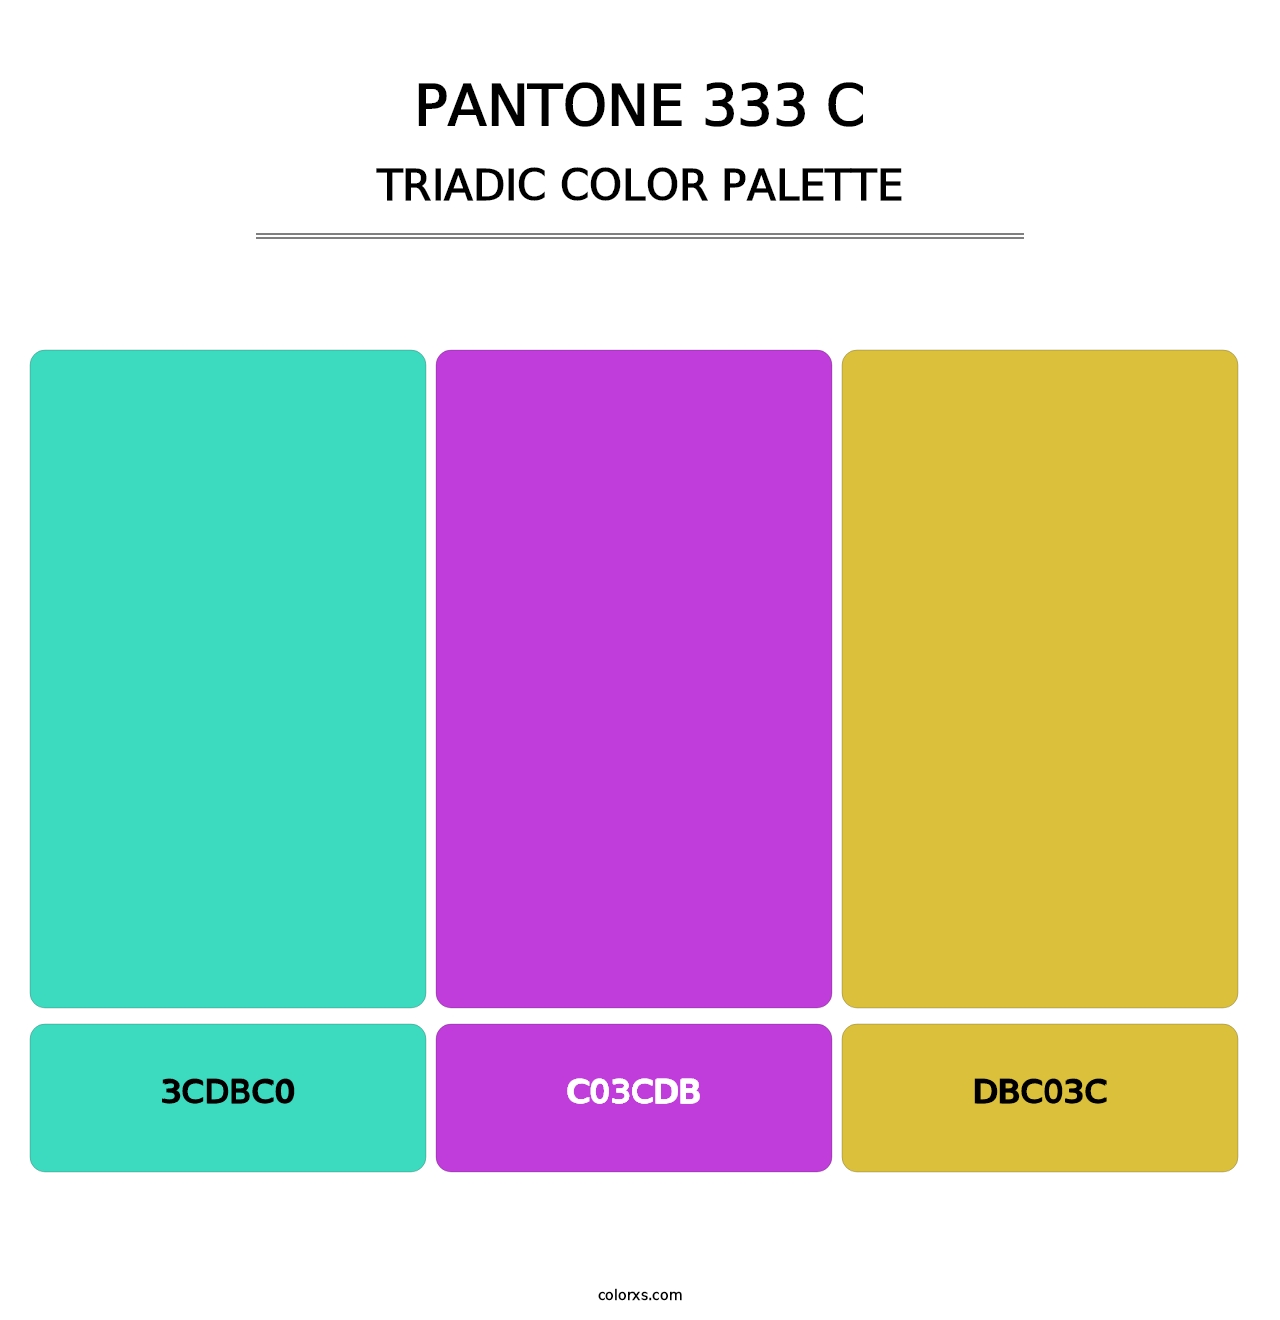 PANTONE 333 C - Triadic Color Palette